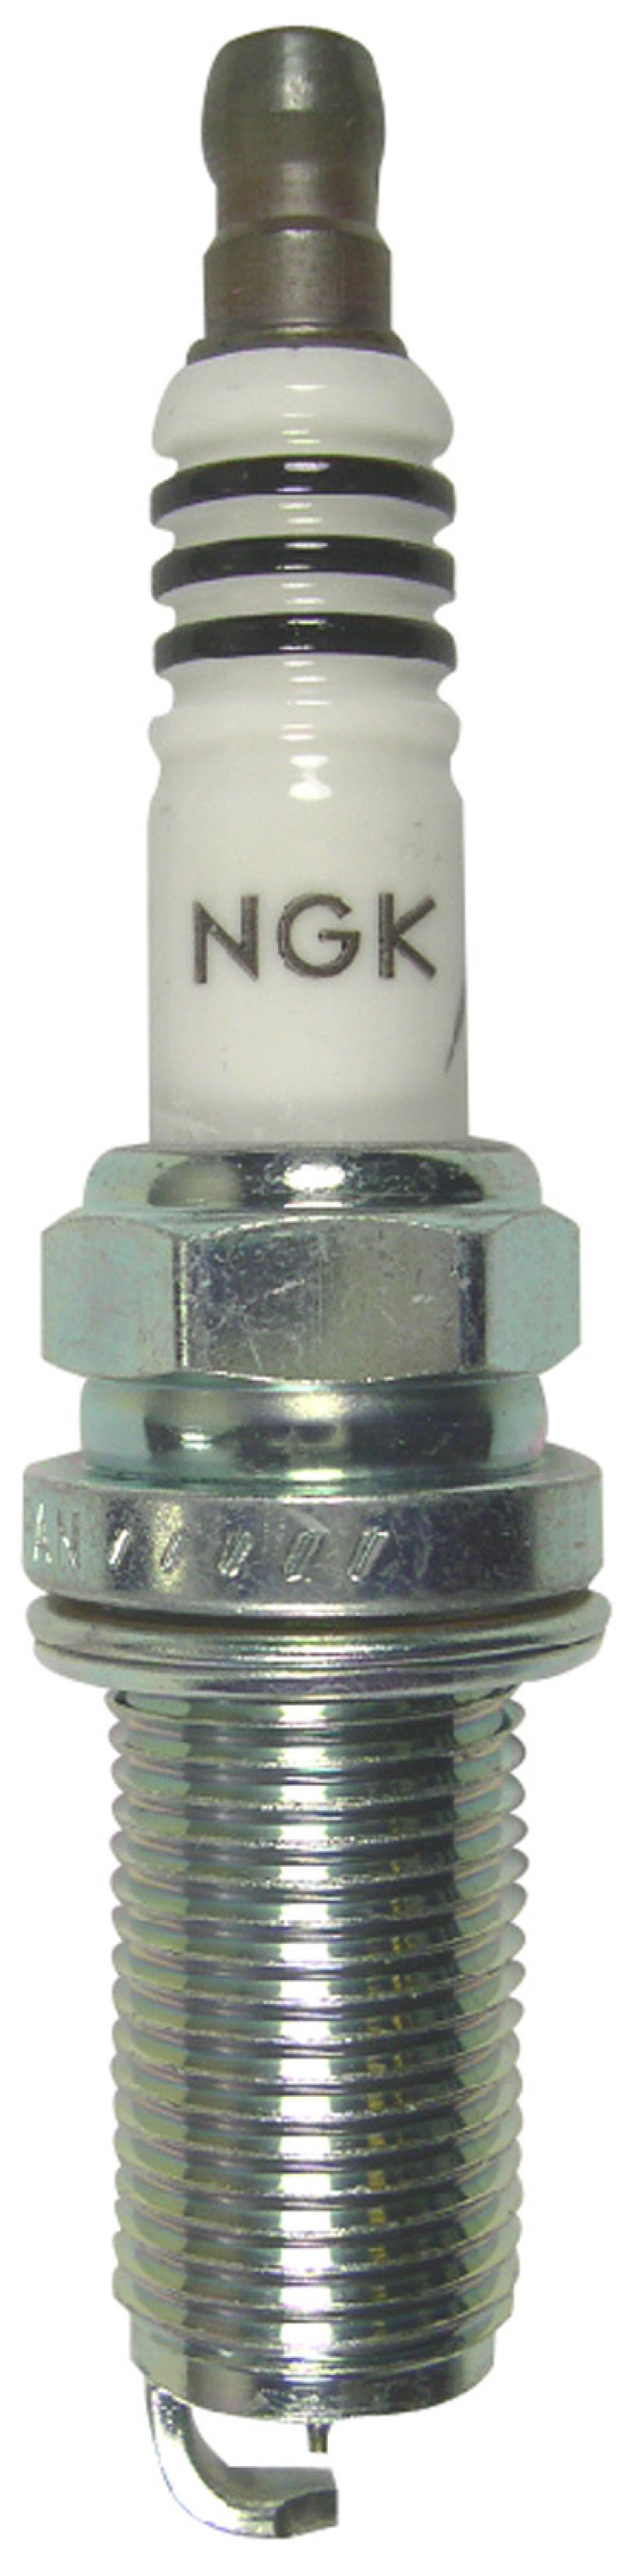 NGK Iridium IX Spark Plug Box of 4 (LFR6AIX).